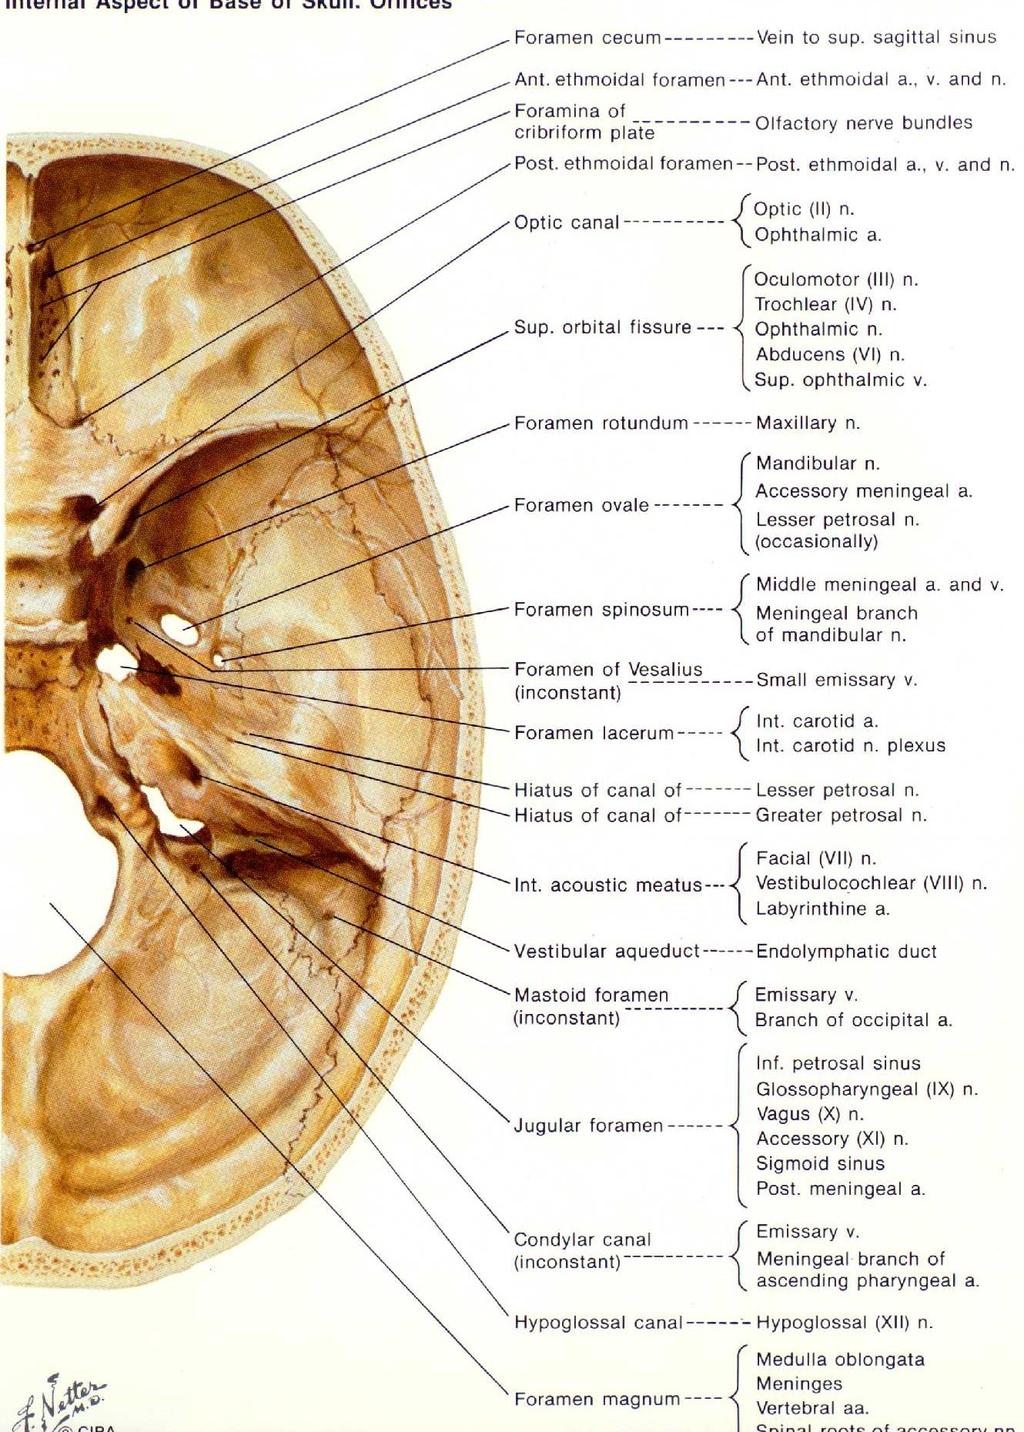 Baze lební Os occipitale f.magnum - XI.,mícha,AV can.hypogl. - XII. Os temporale f.